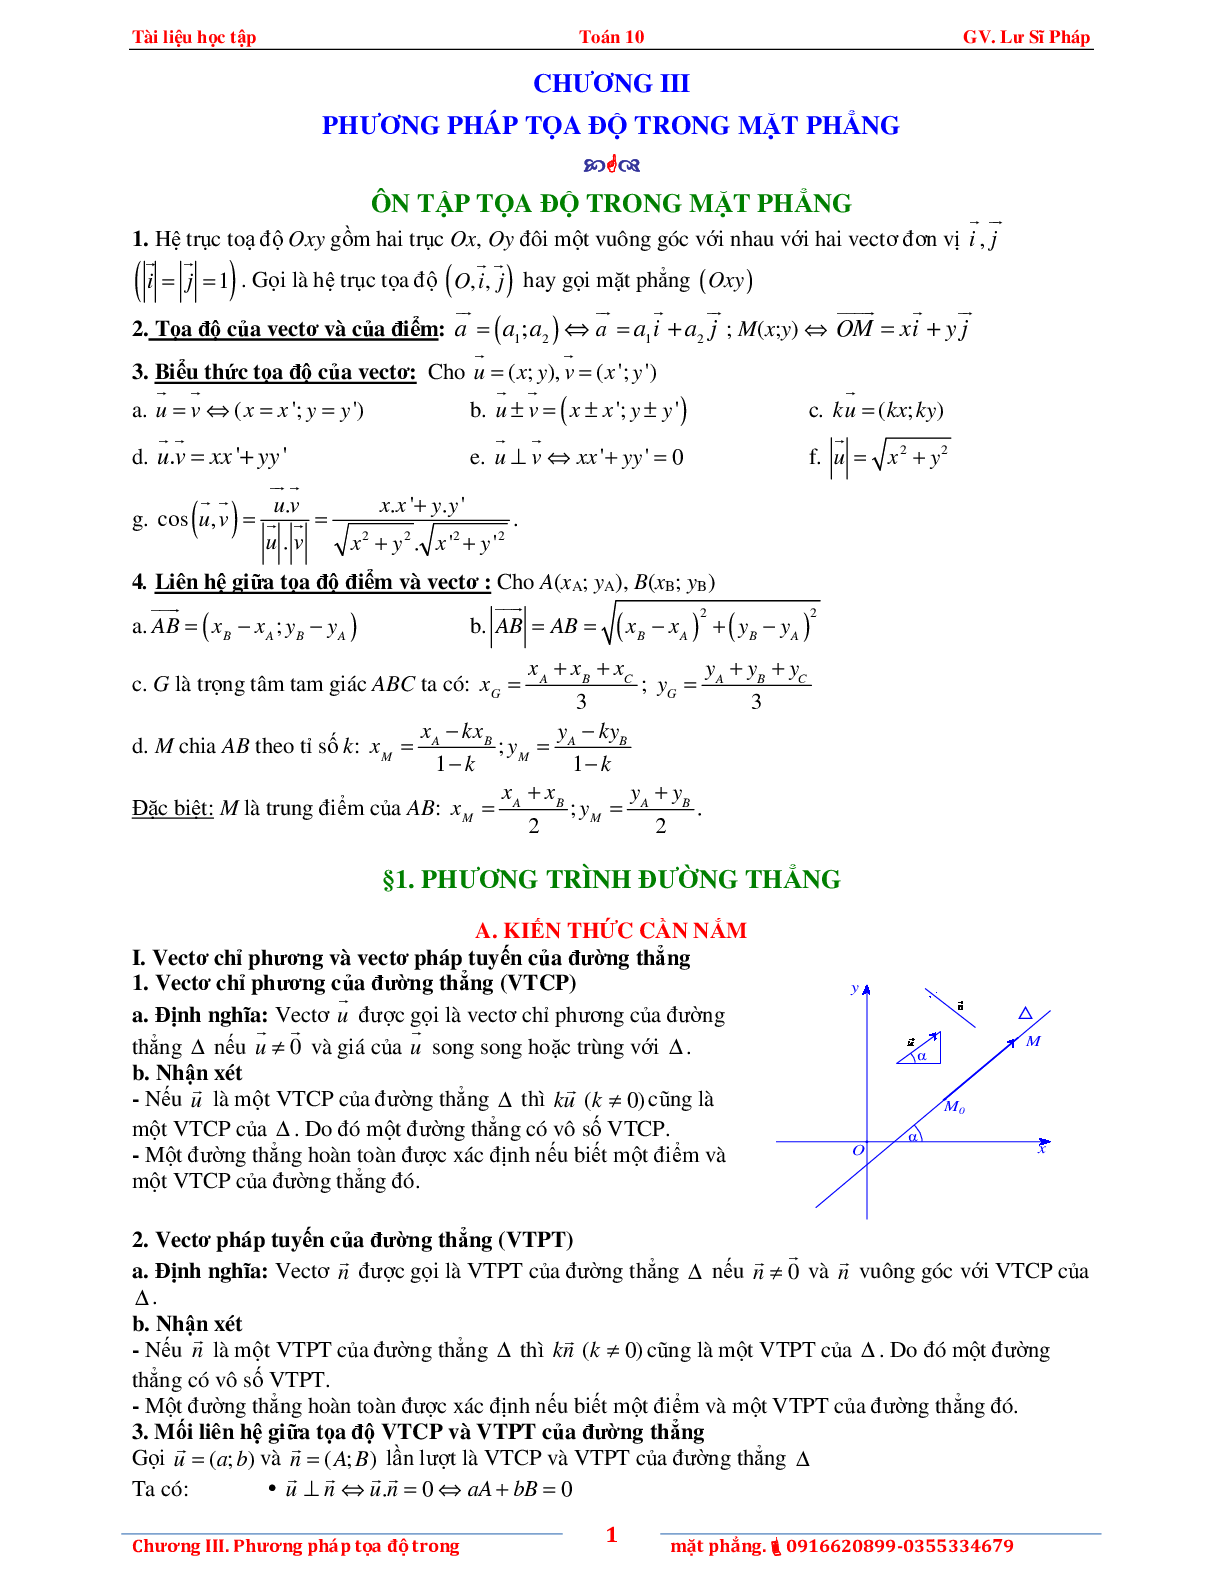 Tài liệu phương pháp tọa độ trong mặt phẳng (trang 5)